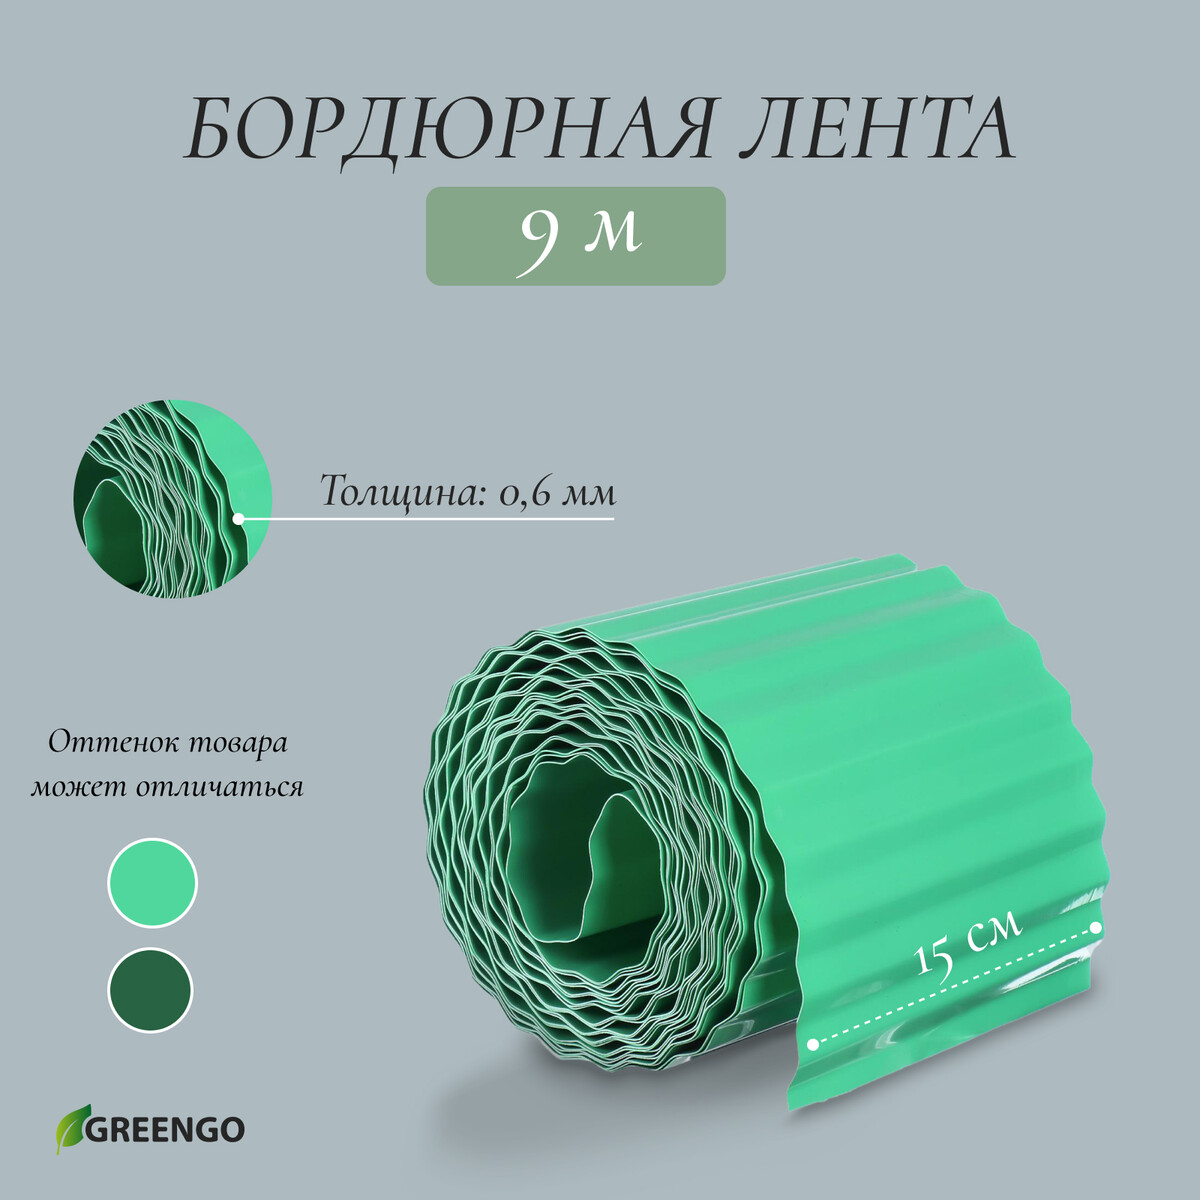 Лента бордюрная, 0.15 × 9 м, толщина 0.6 мм, пластиковая, гофра, зеленая, greengo лента бордюрная 0 15 × 9 м толщина 1 2 мм пластиковая фигурная коричневая